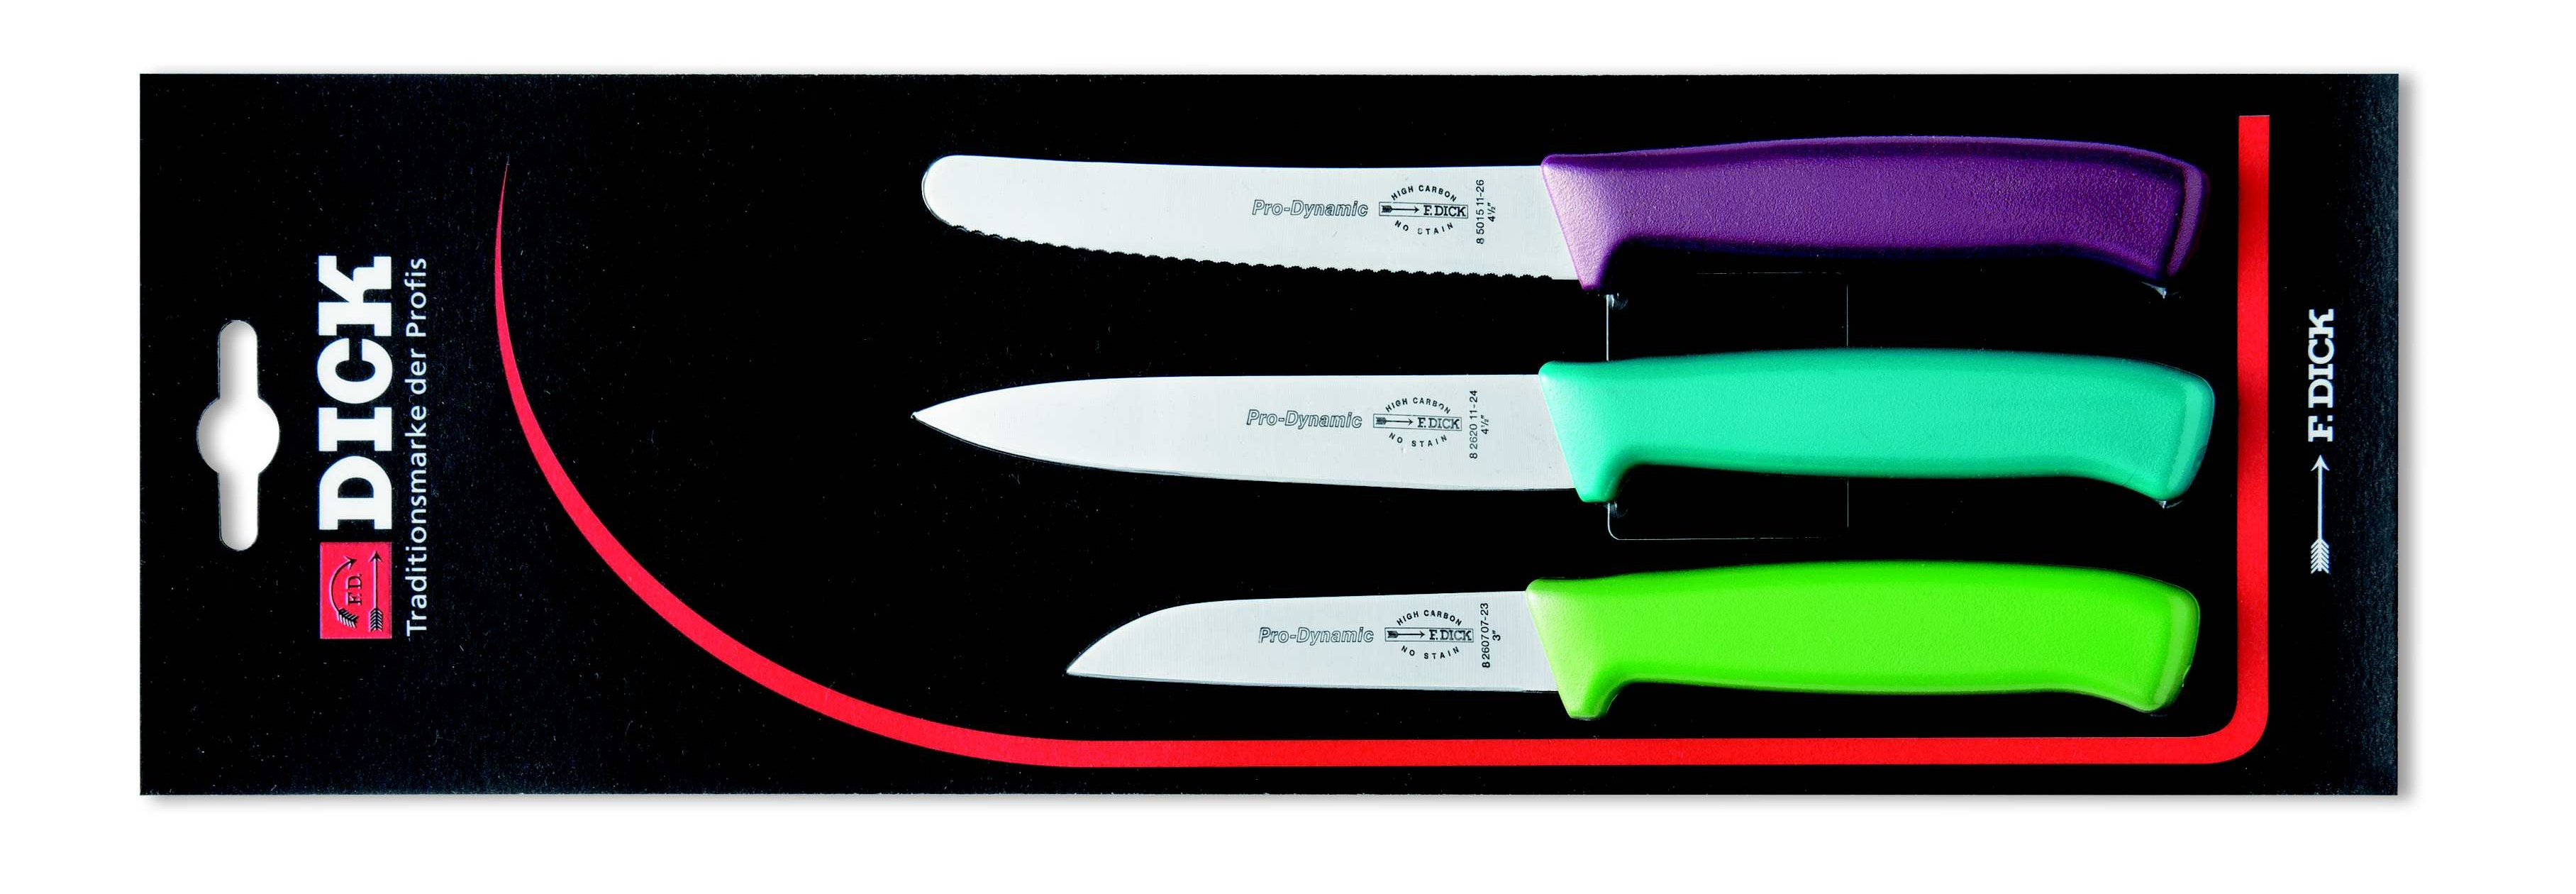 Ножи dick. Ножи кухонные Pro- Dynamic 85151 26. Ножи кухонные Pro- Dynamics-. Ножи ножницы топорики. Ножи e dick.